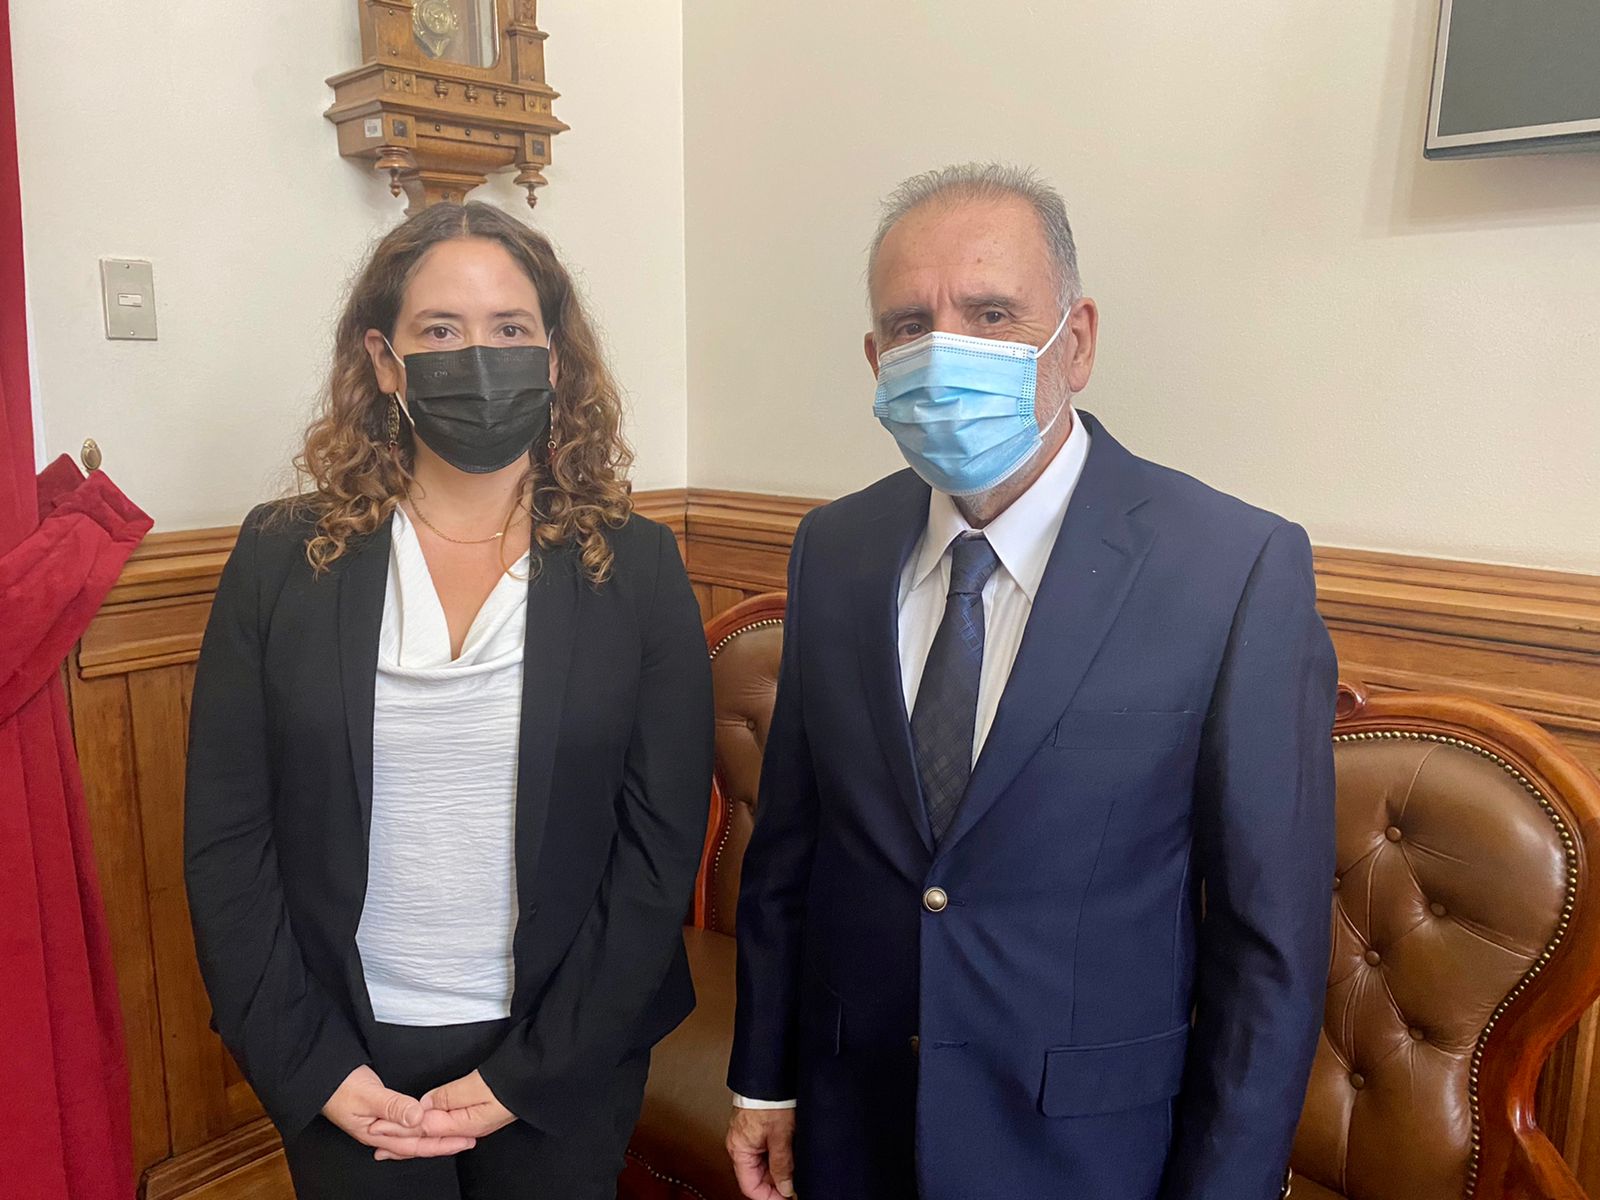 La Defensora Regional Metropolitana Norte, Daniela Báez, se reunió con el nuevo presidente de la Corte de Apelaciones de Santiago, Mario Rojas.